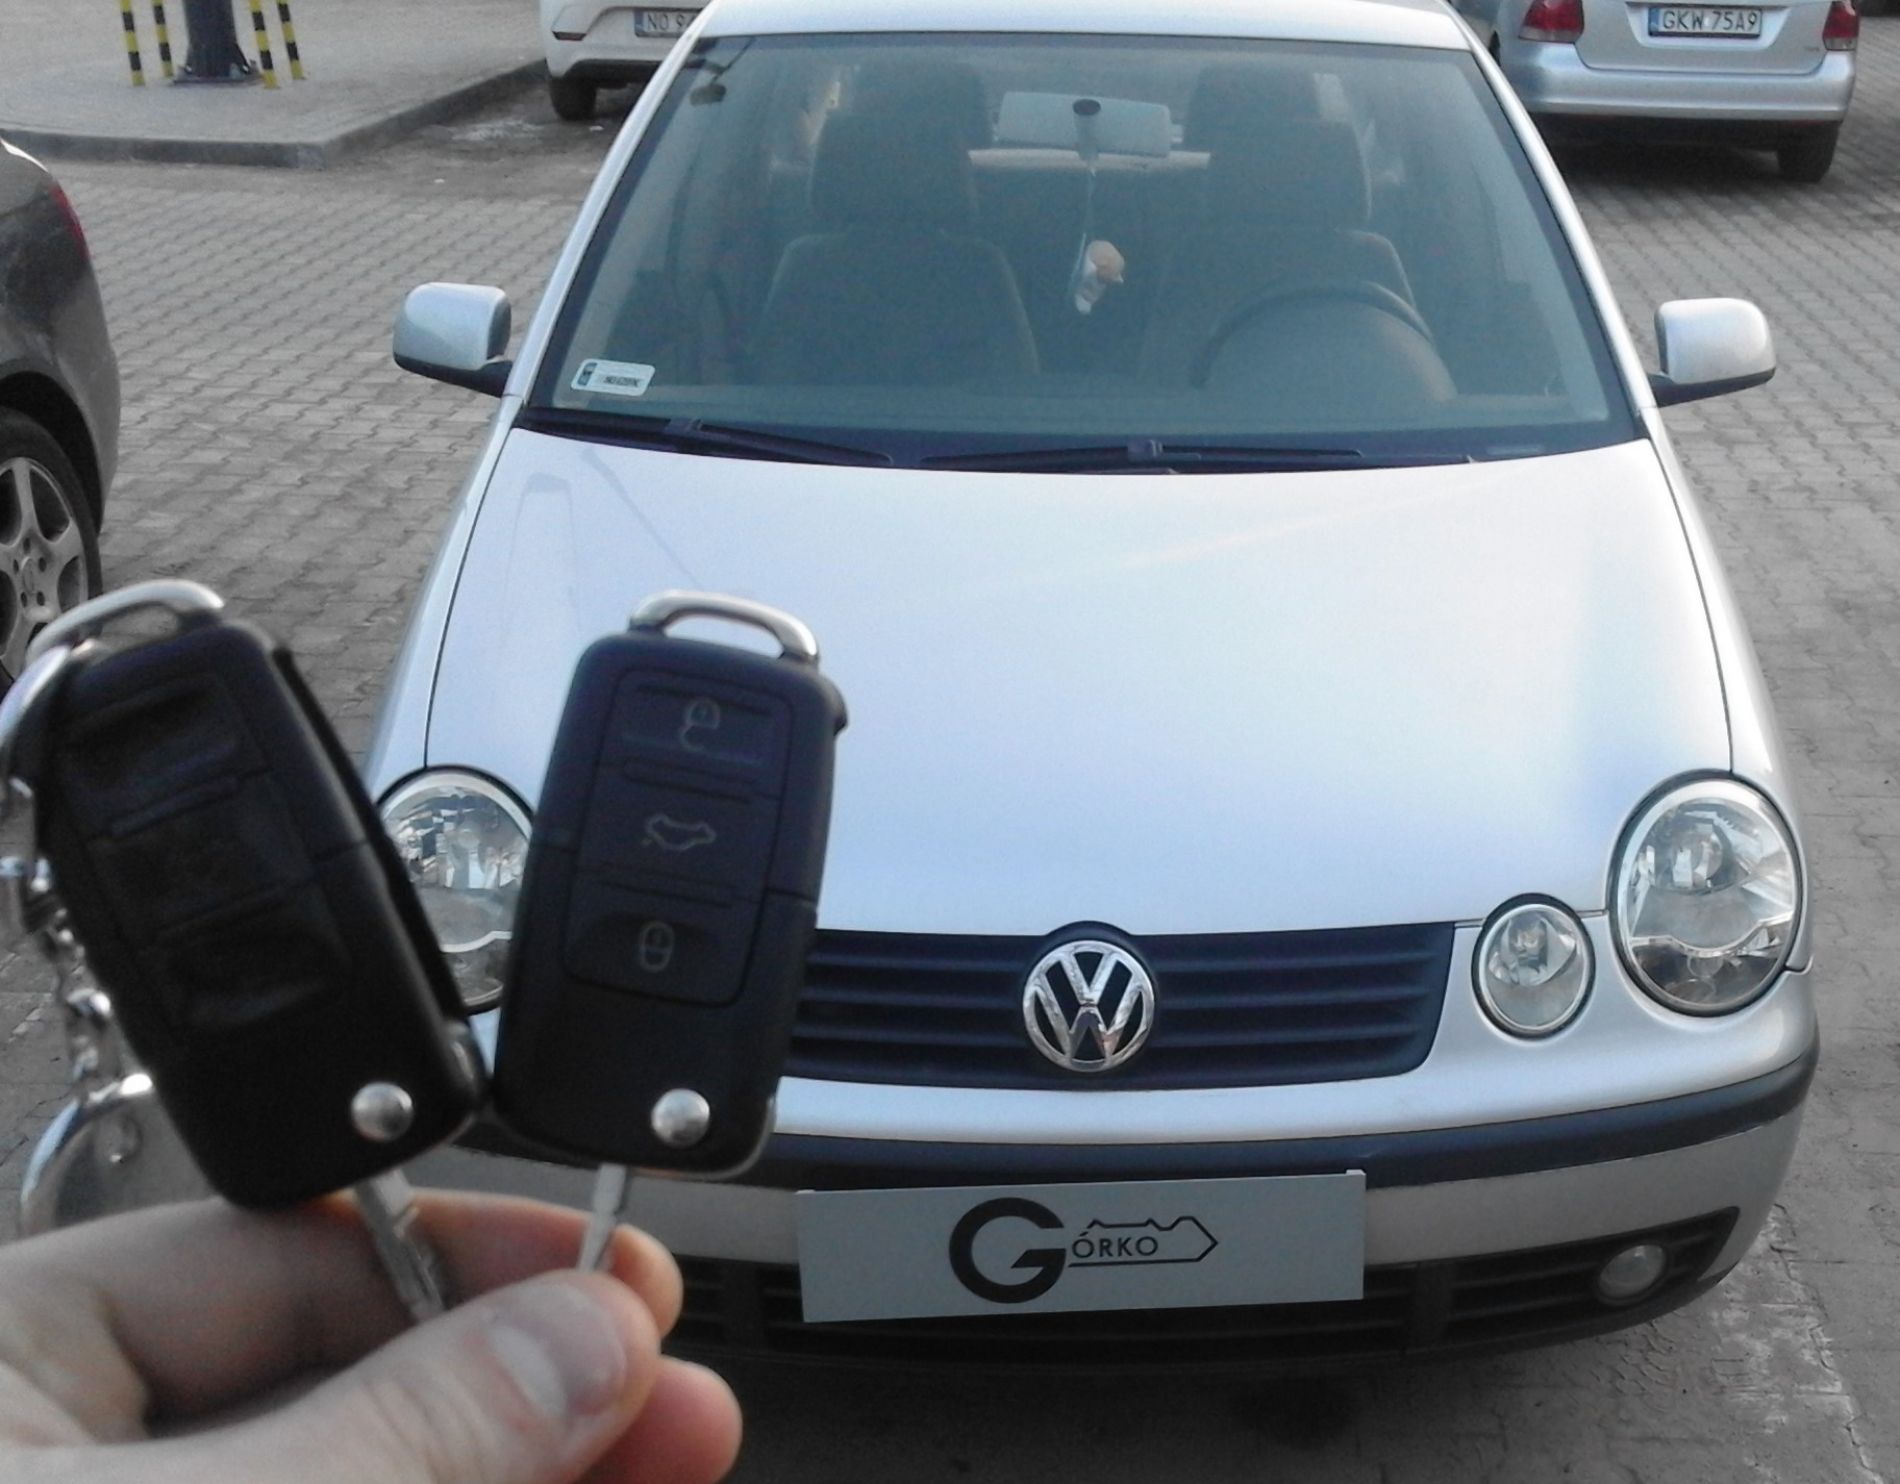 Kodowanie klucza do VW Polo z 2003 roku